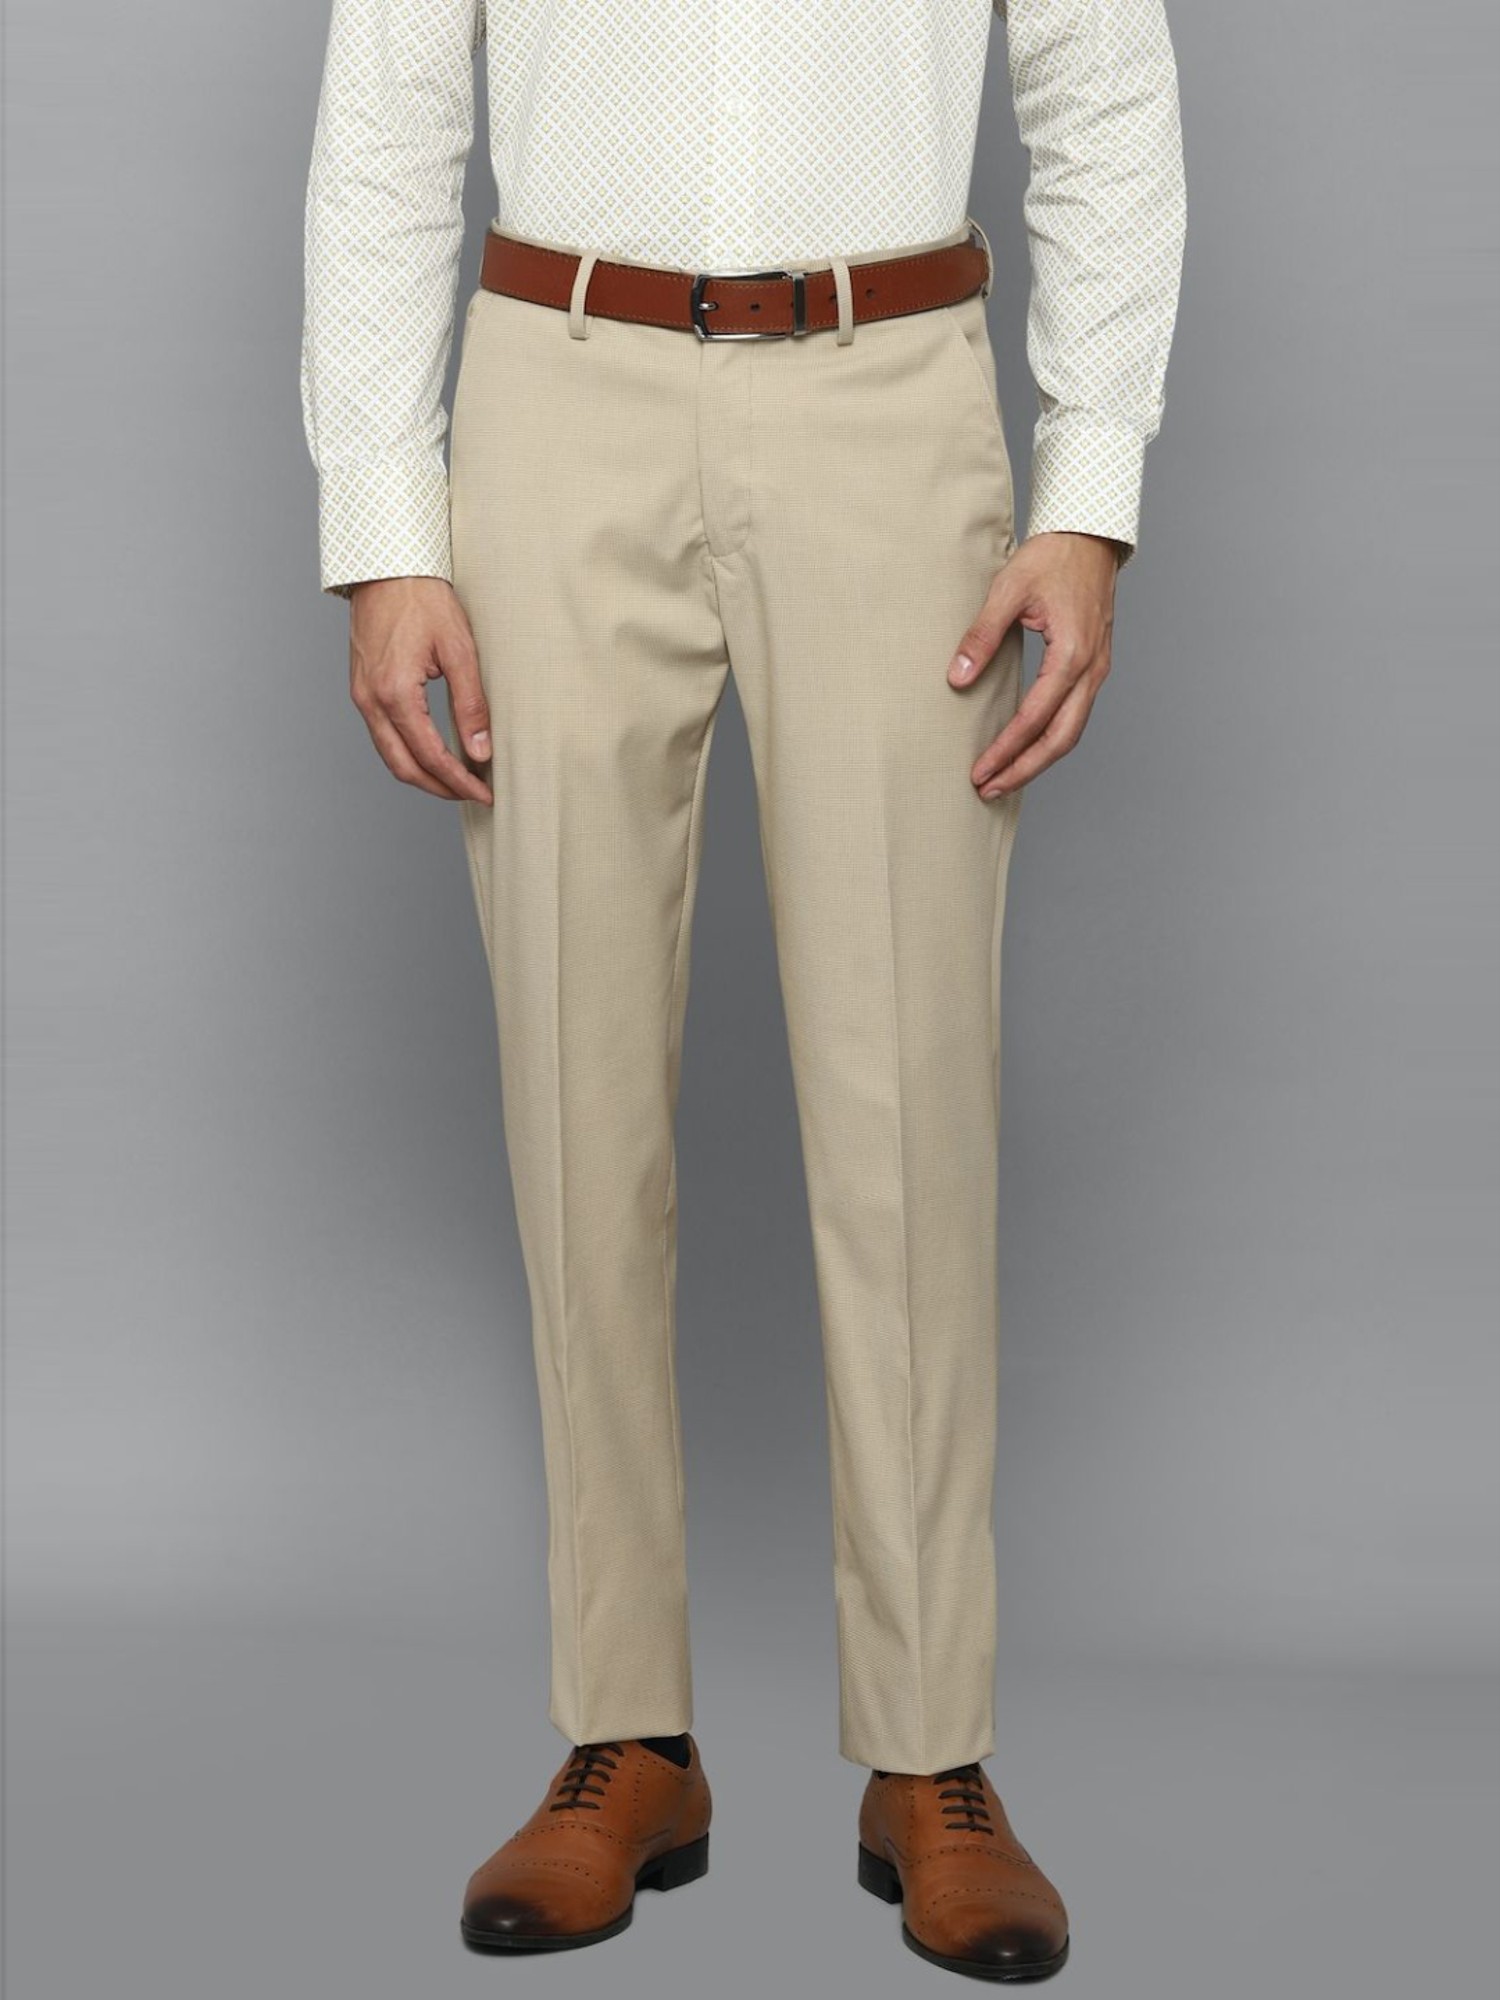 Buy Beige Formal Trousers For Men Online  Best Prices in India  Uniform  Bucket  UNIFORM BUCKET